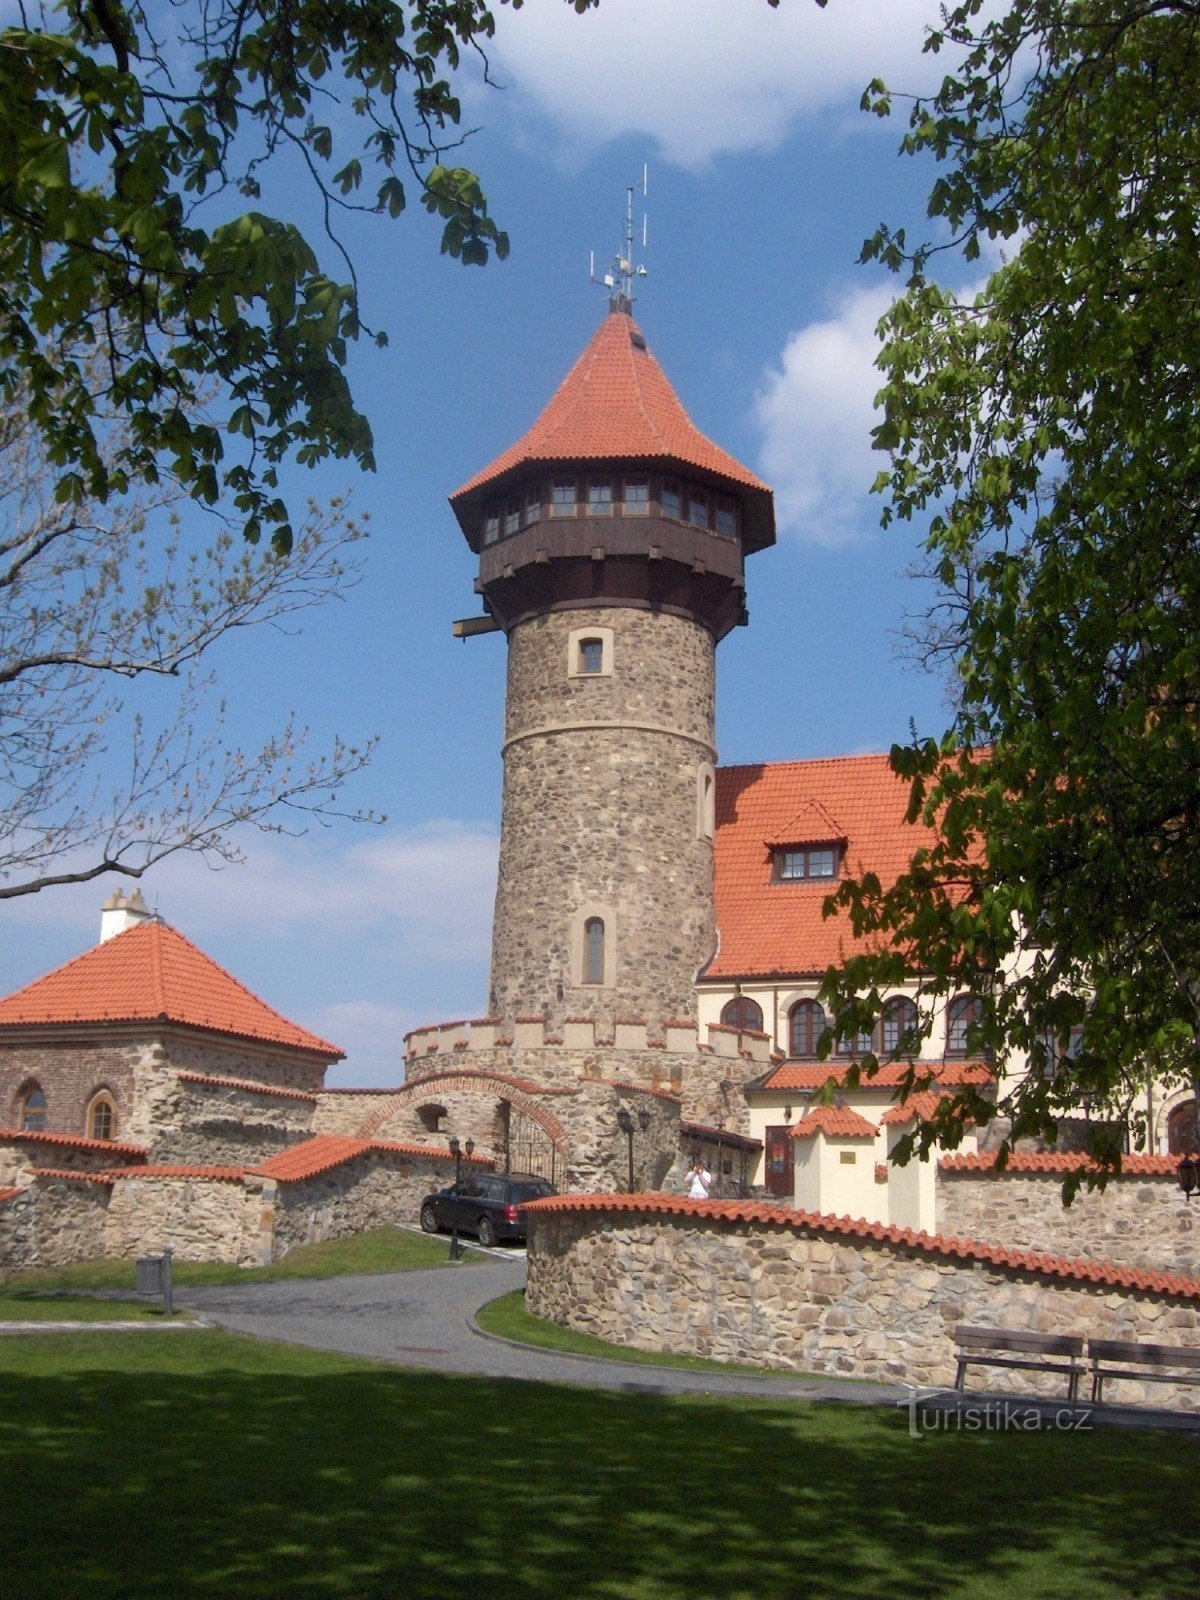 Dvorac Hněvín